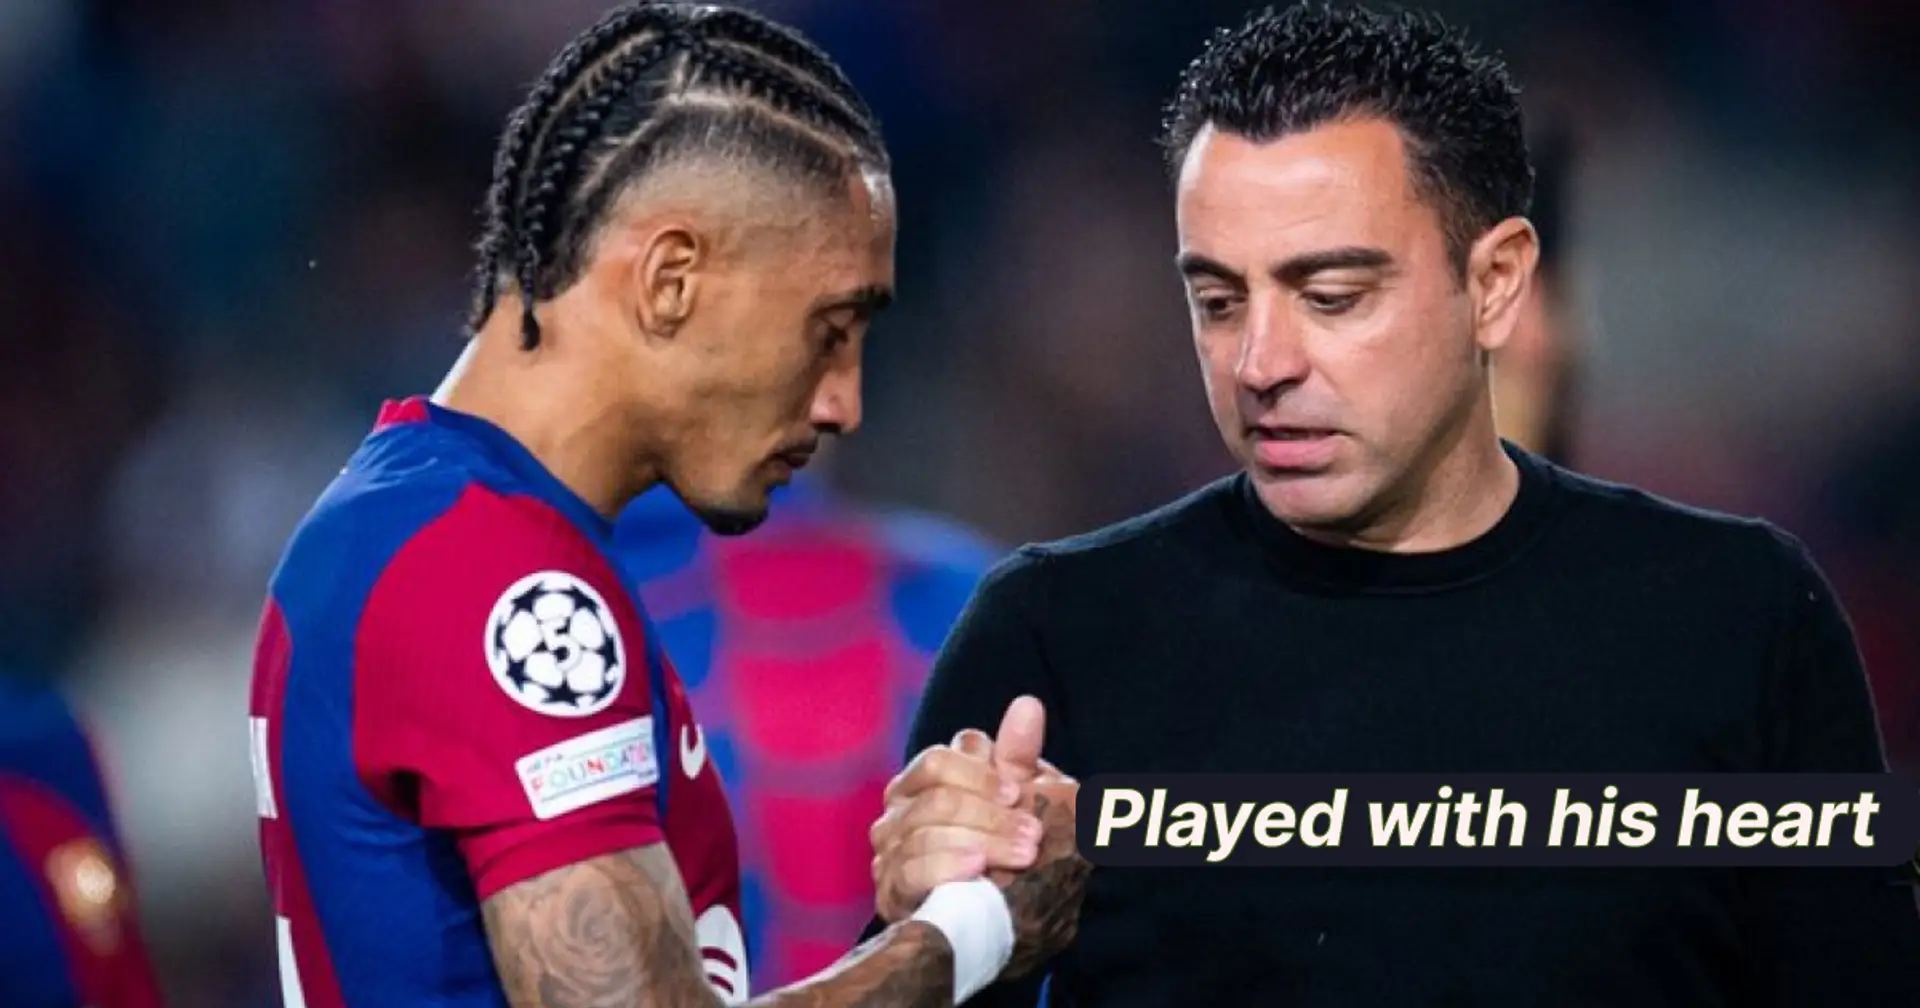 'Estoy orgulloso de ellos': los aficionados del Barça nombran a 2 jugadores que hicieron un gran partido a pesar de la derrota por 4-1